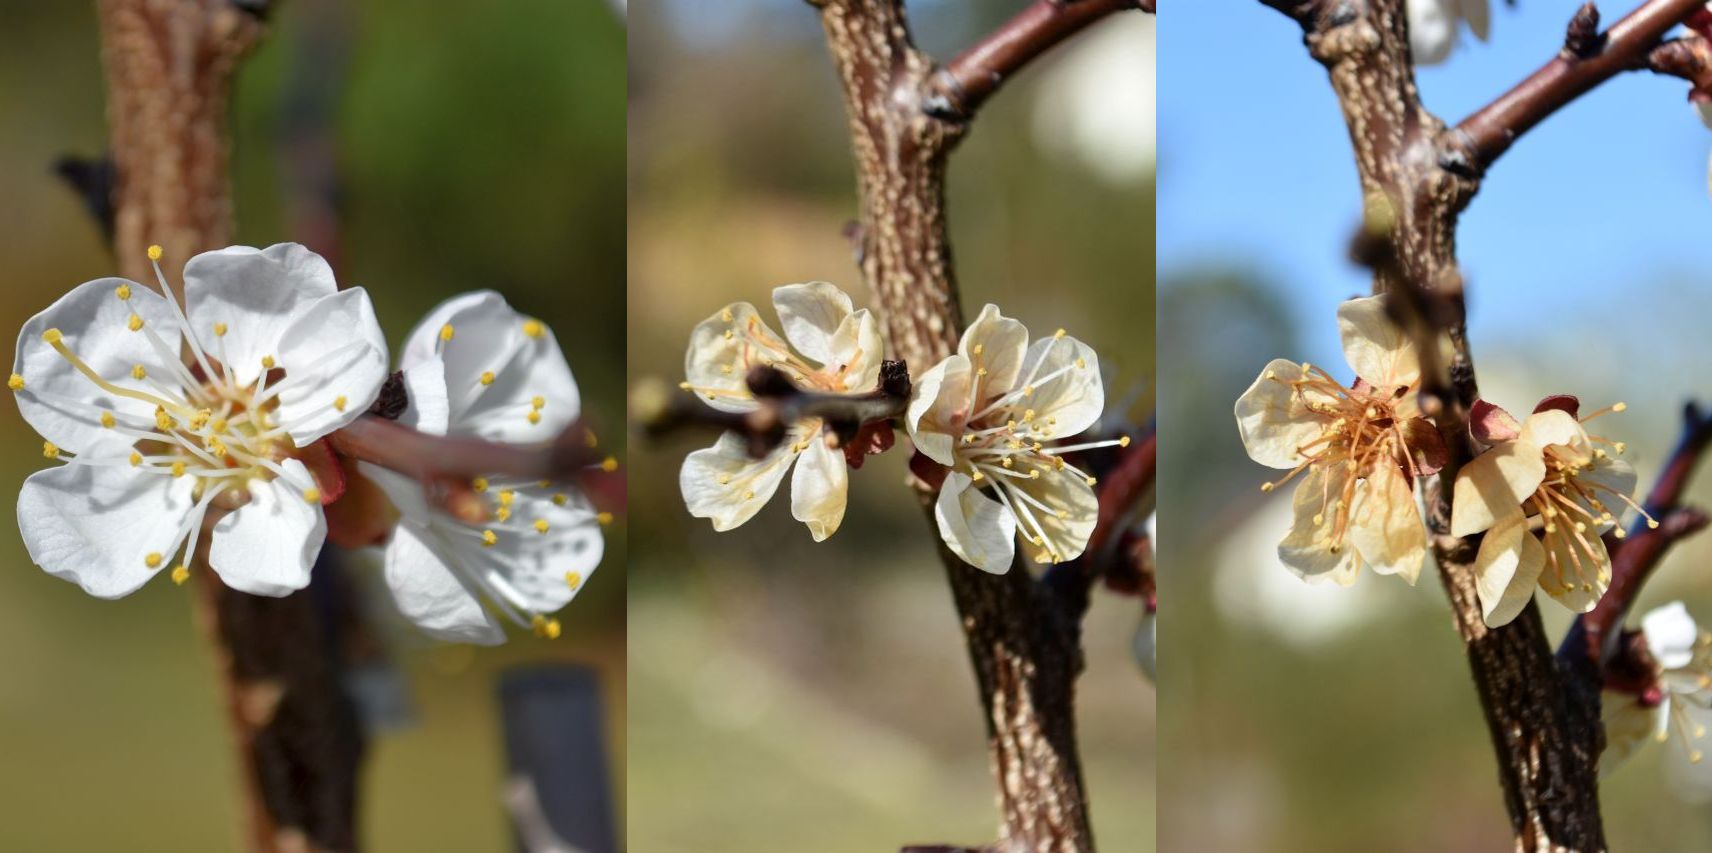 Aprikosenblüte vor und nach einer, bzw. zwei Frostnächten (Foto: Andreas Oppermann)